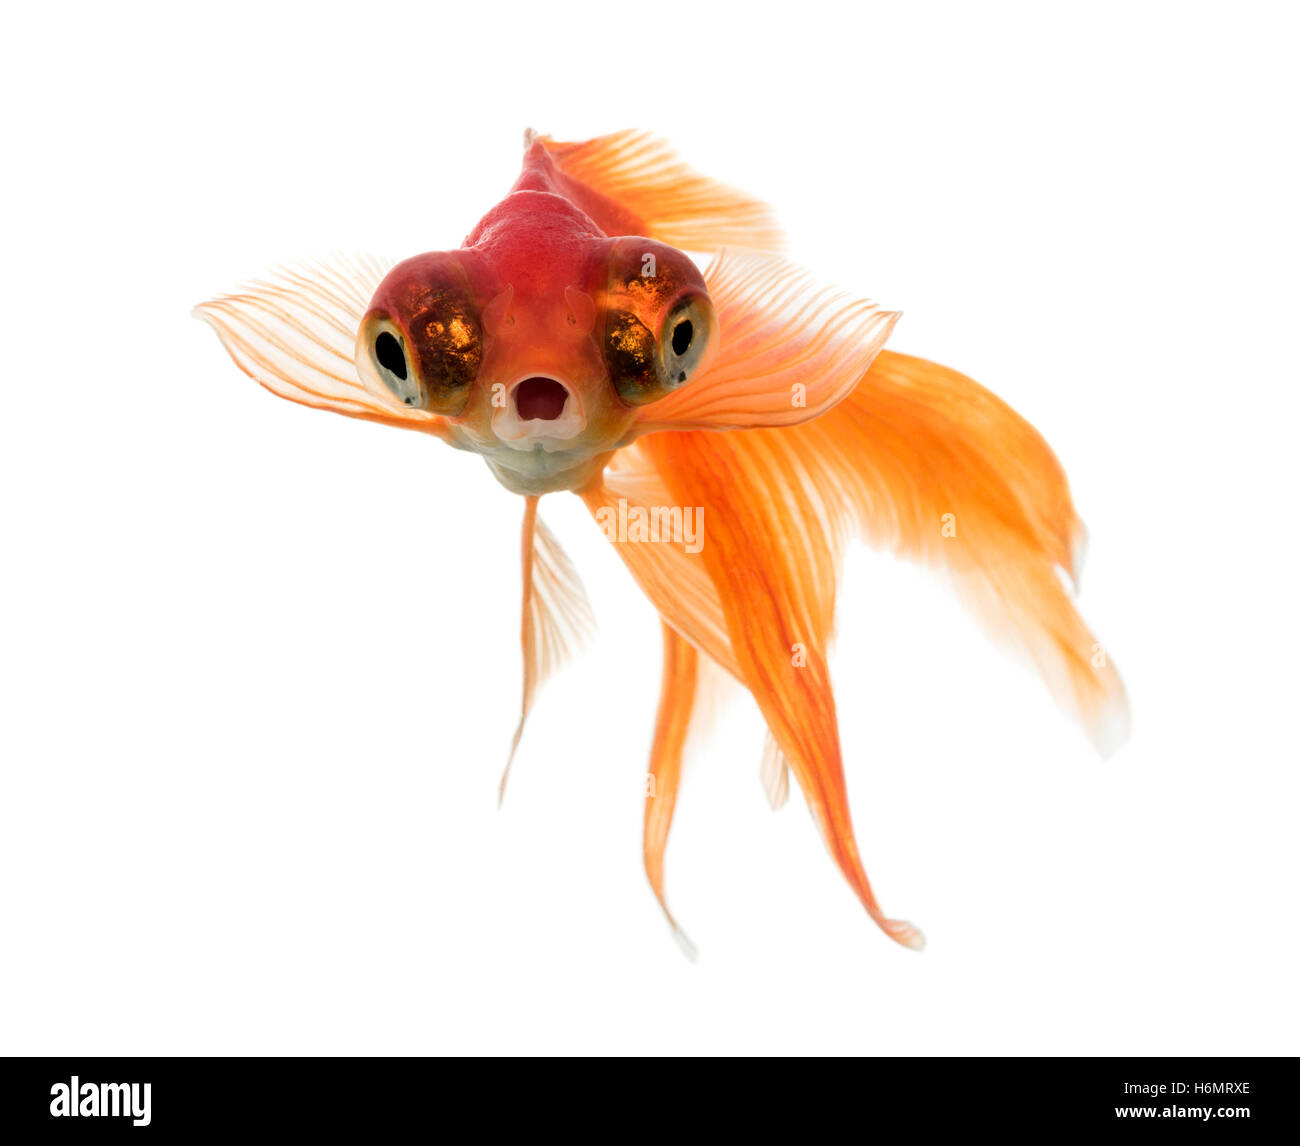 Vue de face d'un poisson rouge dans l'eau, islolated on white Banque D'Images